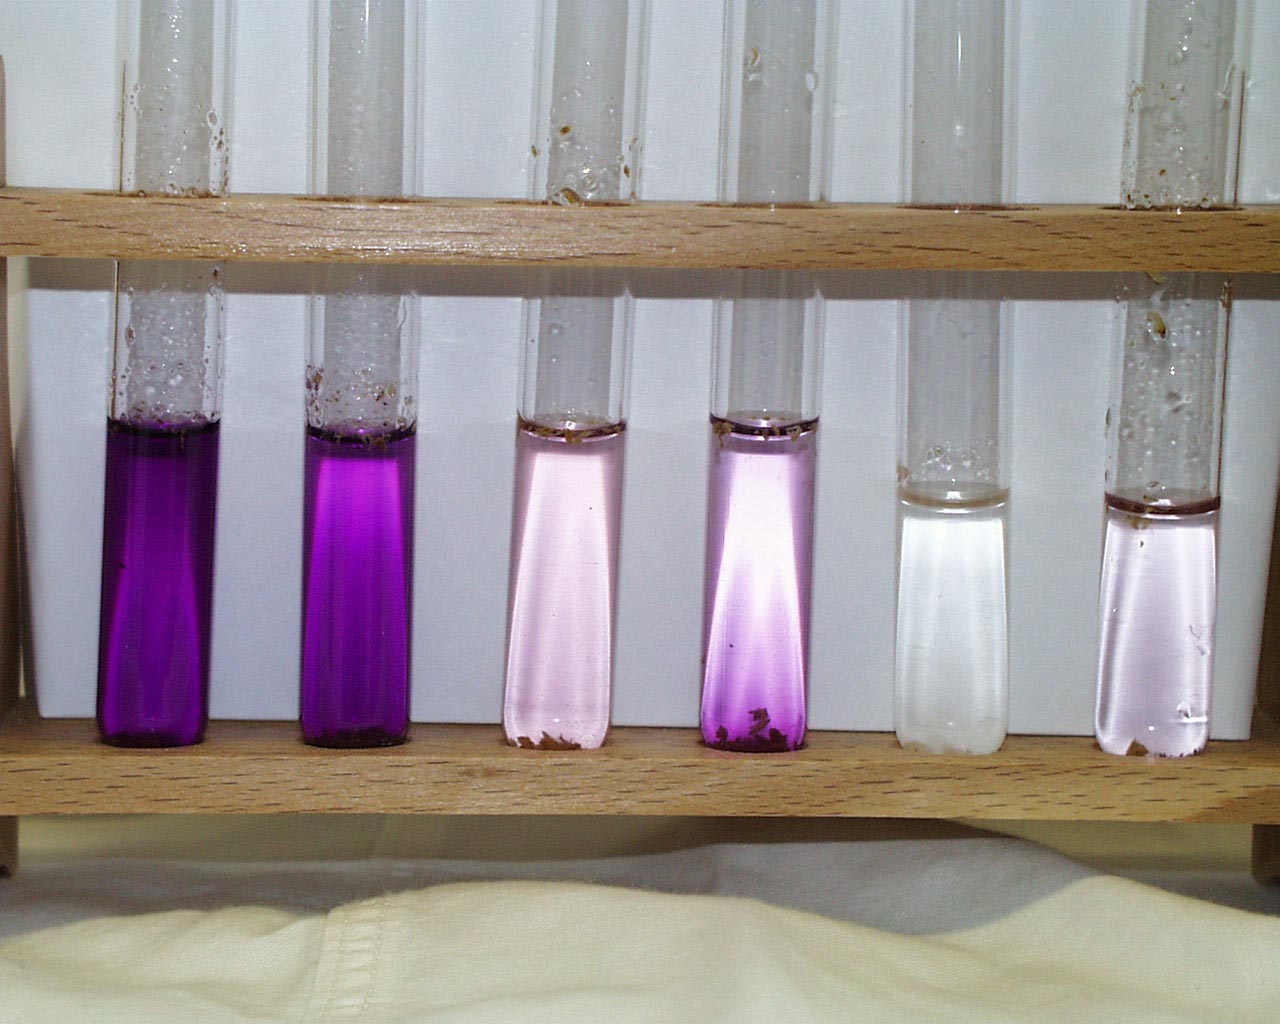 Foto von Reagenzgläsern im Halter. Von links nach rechts nimmt die Färbungsintensität (violette Farbe)  ab